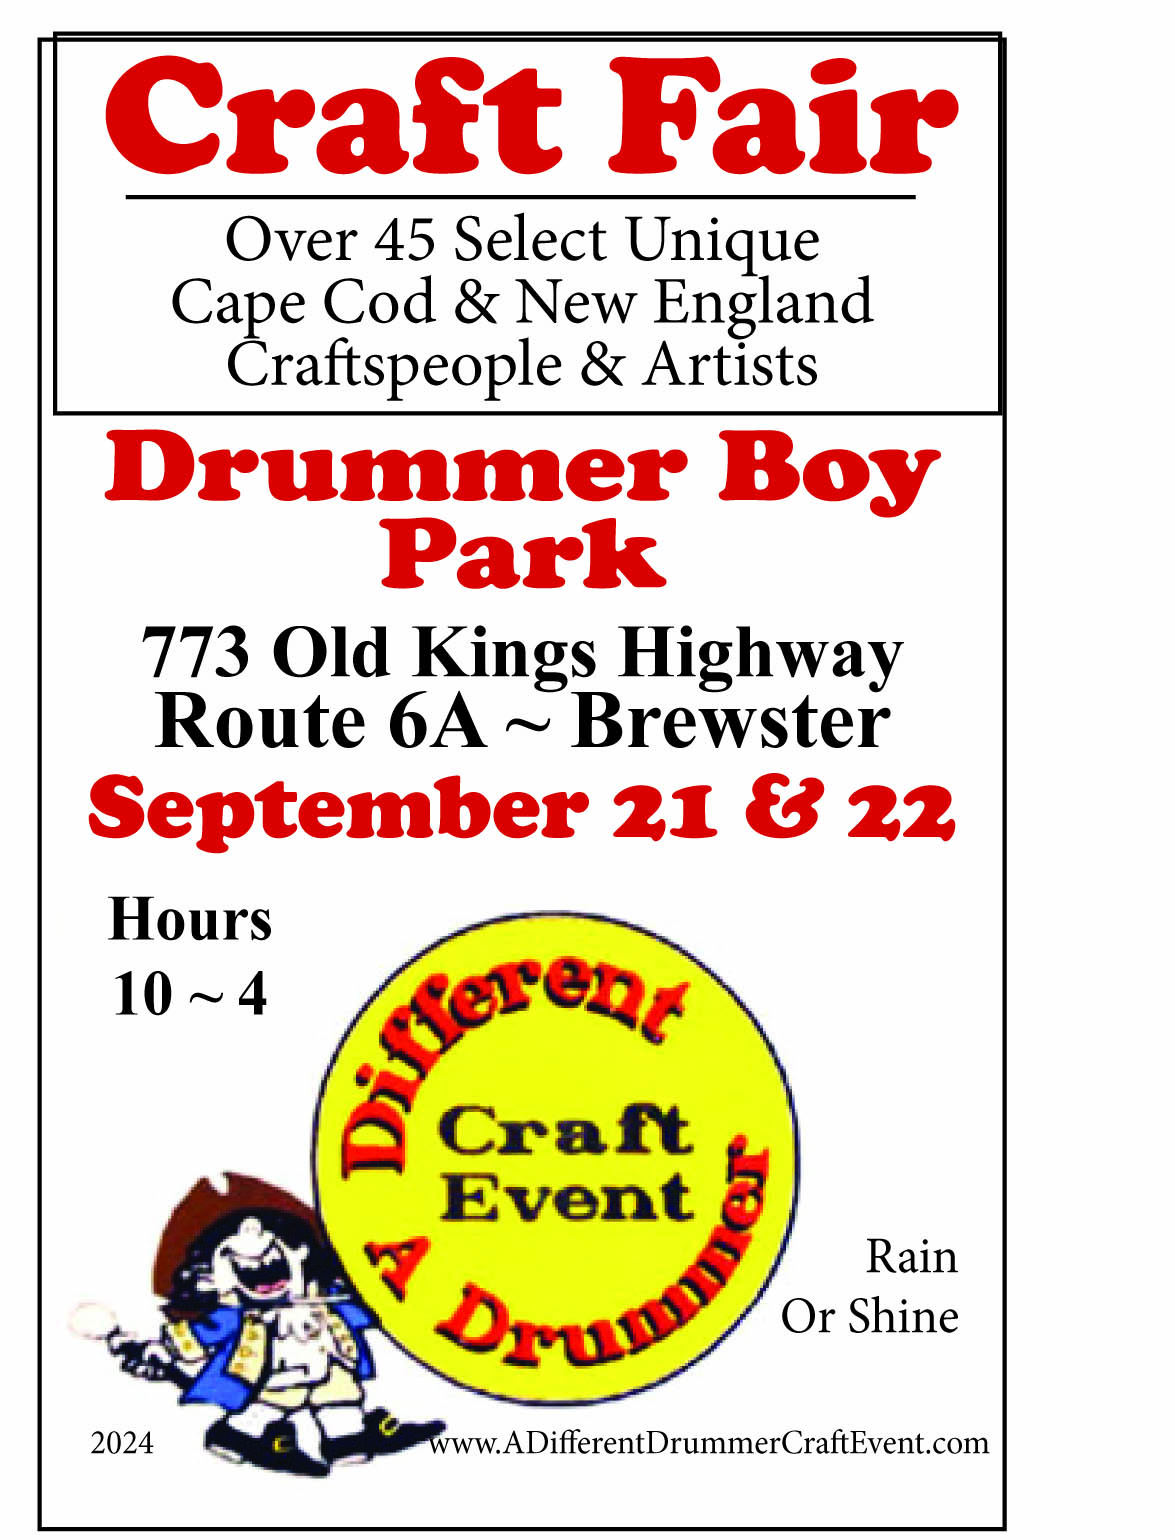 Different Drummer Craft Event